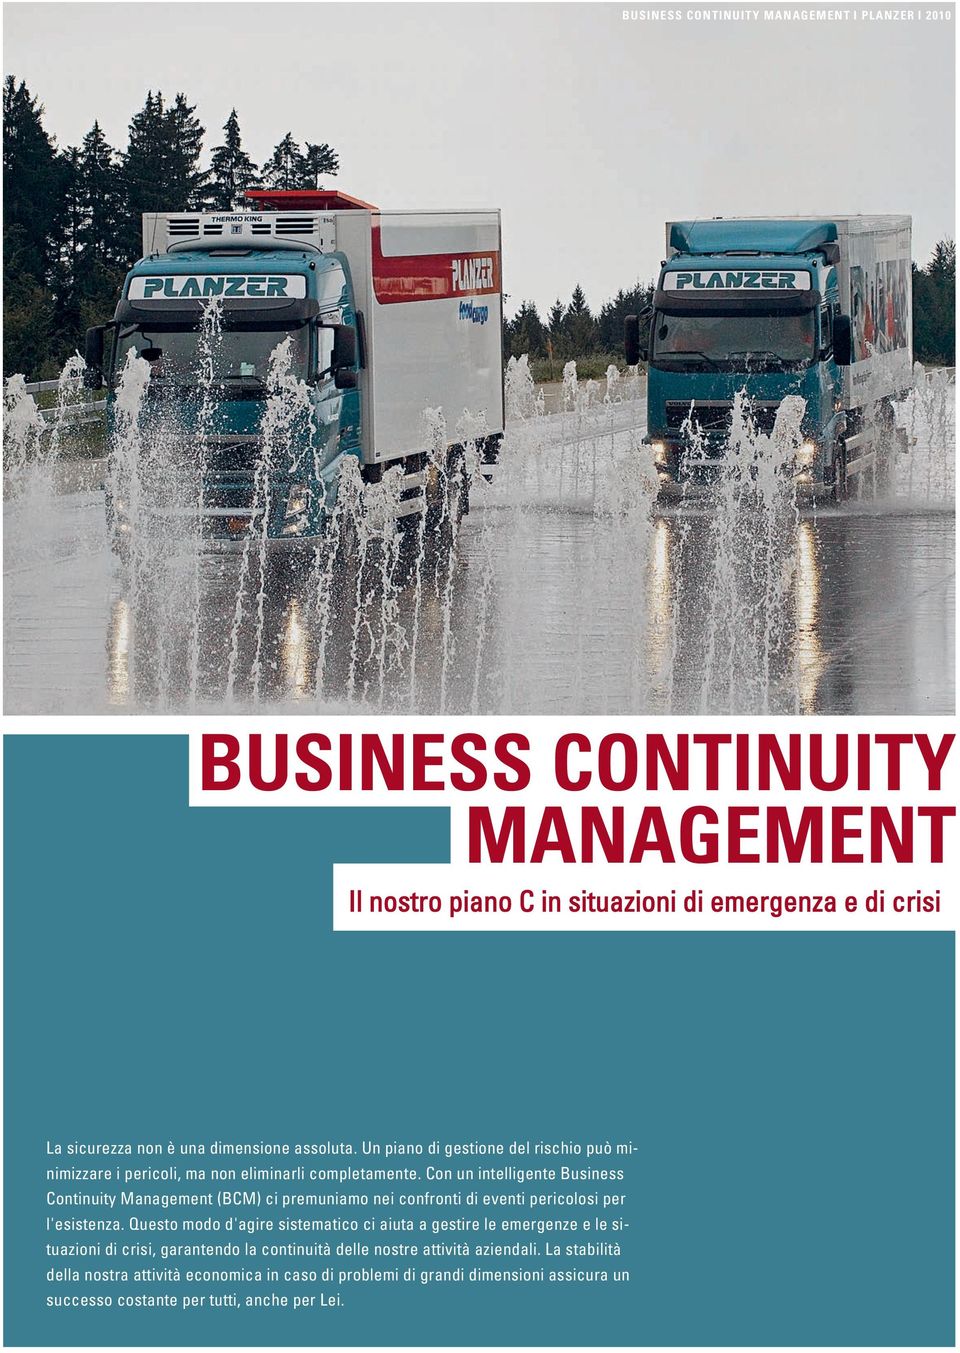 Con un intelligente Business Continuity Management (BCM) ci premuniamo nei confronti di eventi pericolosi per l'esistenza.